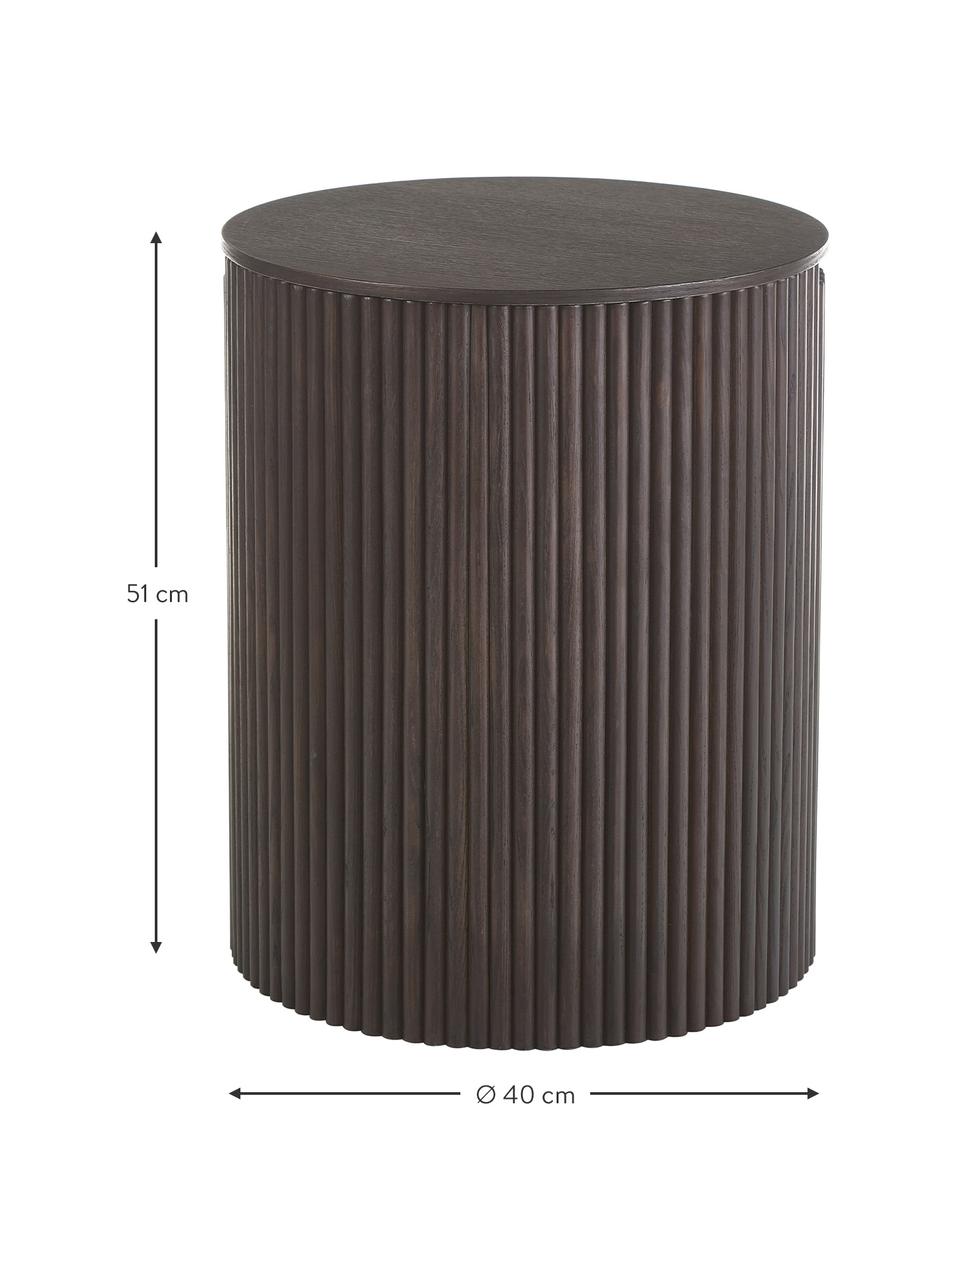 Table d'appoint avec rangement Nele, MDF (panneau en fibres de bois à densité moyenne) avec placage en frêne, Noir, Ø 40 x haut. 51 cm